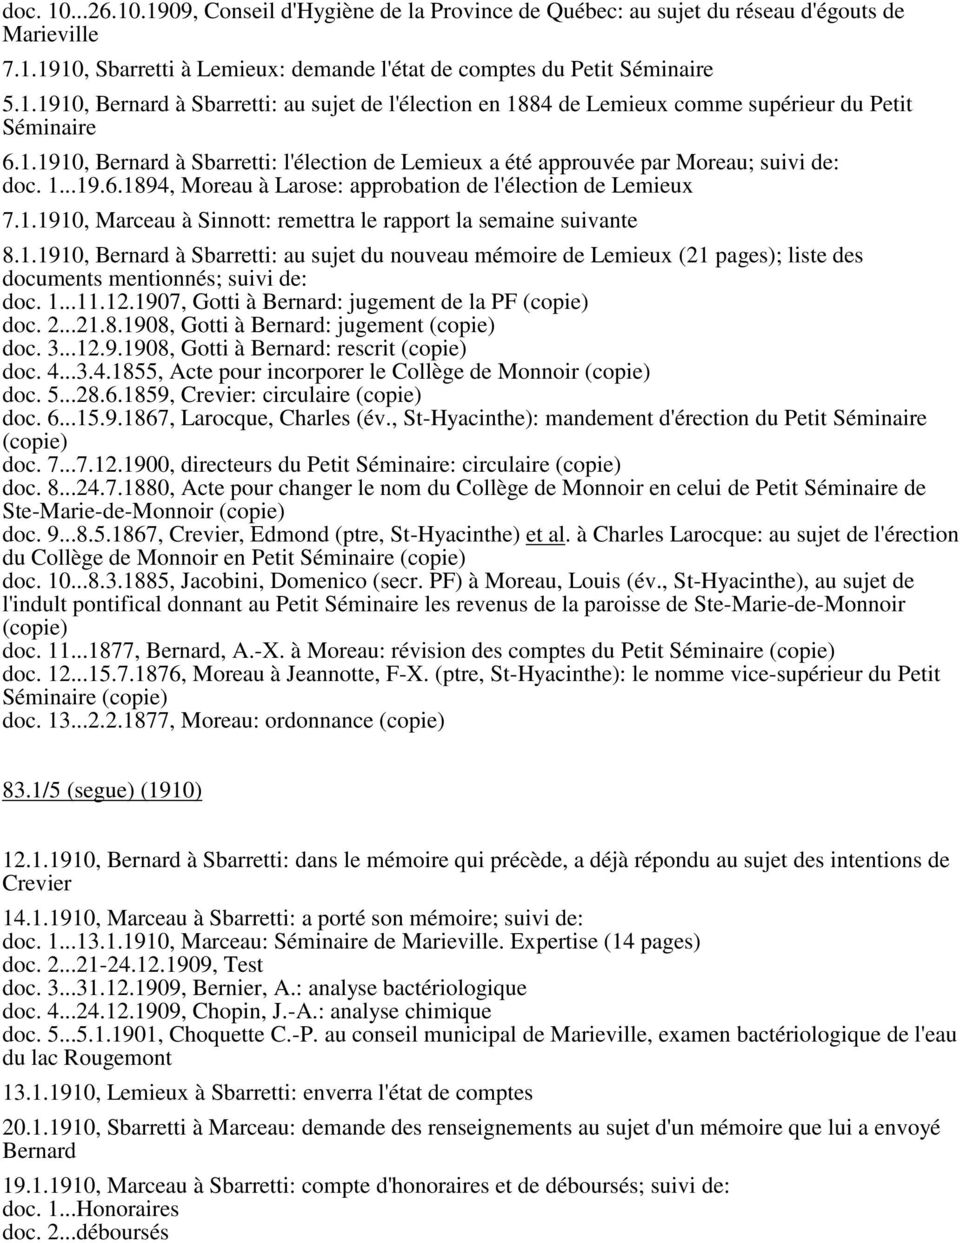 1.1910, Bernard à Sbarretti: au sujet du nouveau mémoire de Lemieux (21 pages); liste des documents mentionnés; suivi de: doc. 1...11.12.1907, Gotti à Bernard: jugement de la PF (copie) doc. 2...21.8.